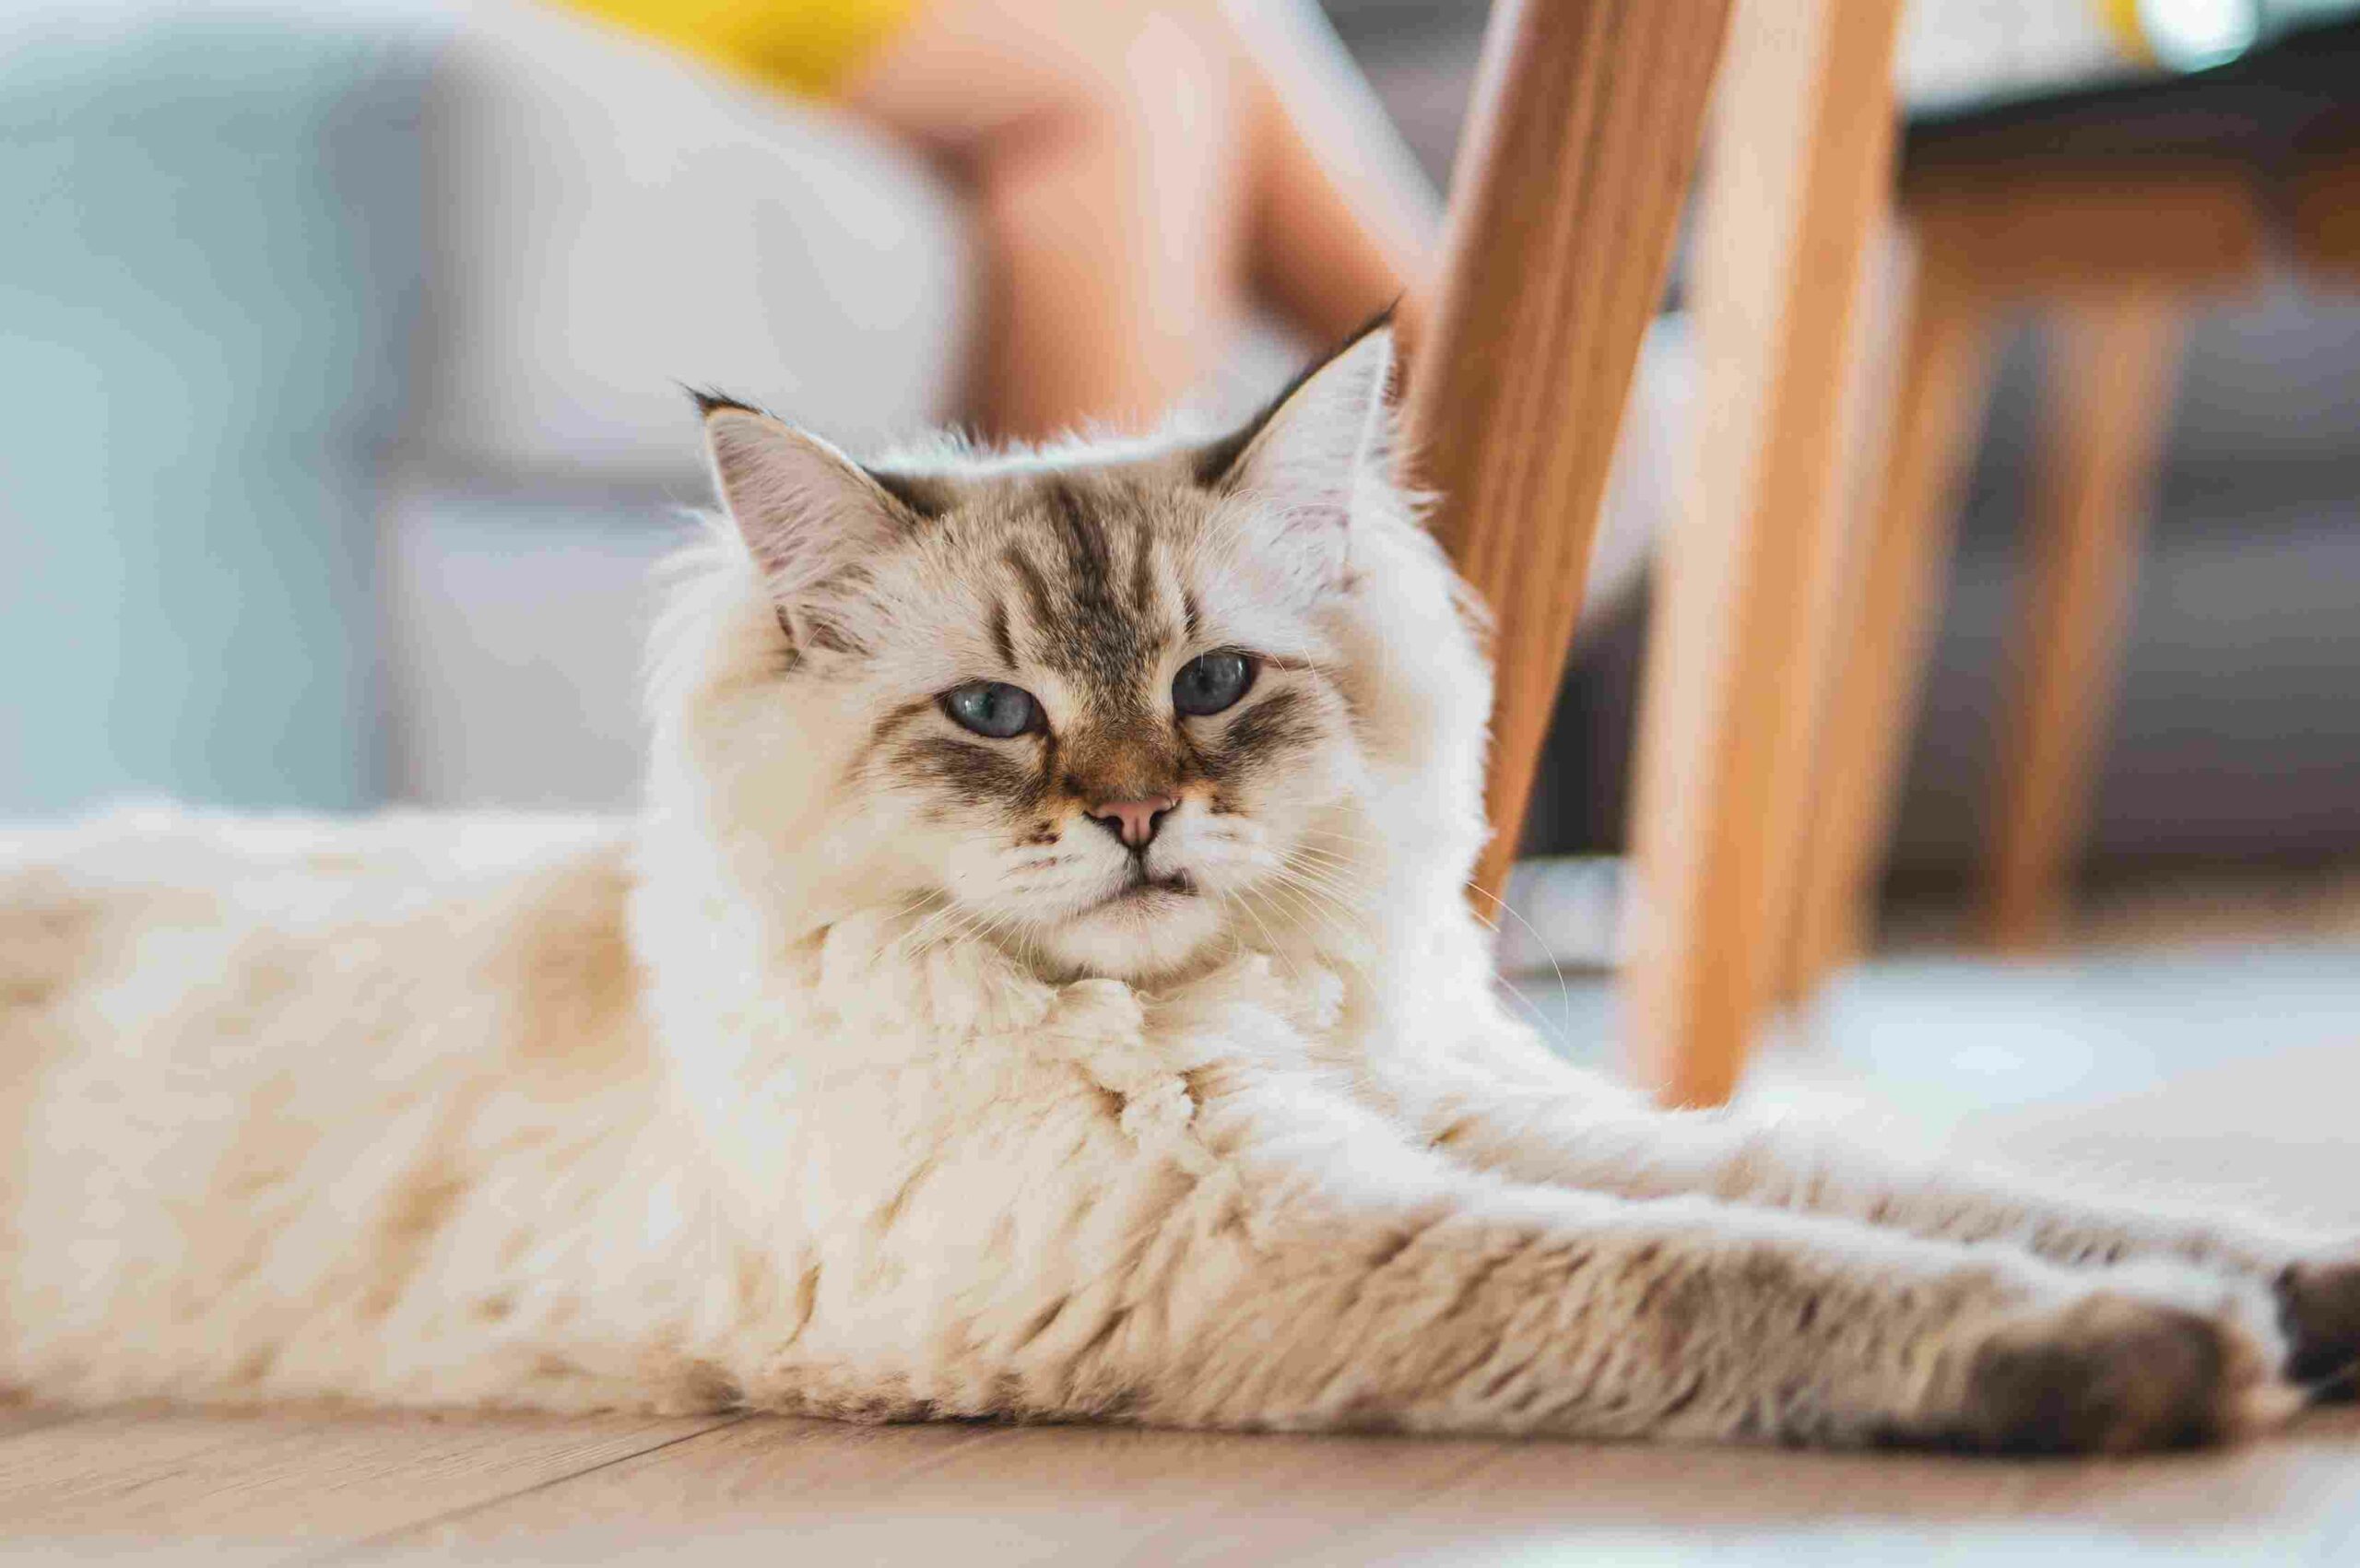 Ketahui Berat Badan Ideal Kucing, Apakah si Anabul Sudah Sesuai?